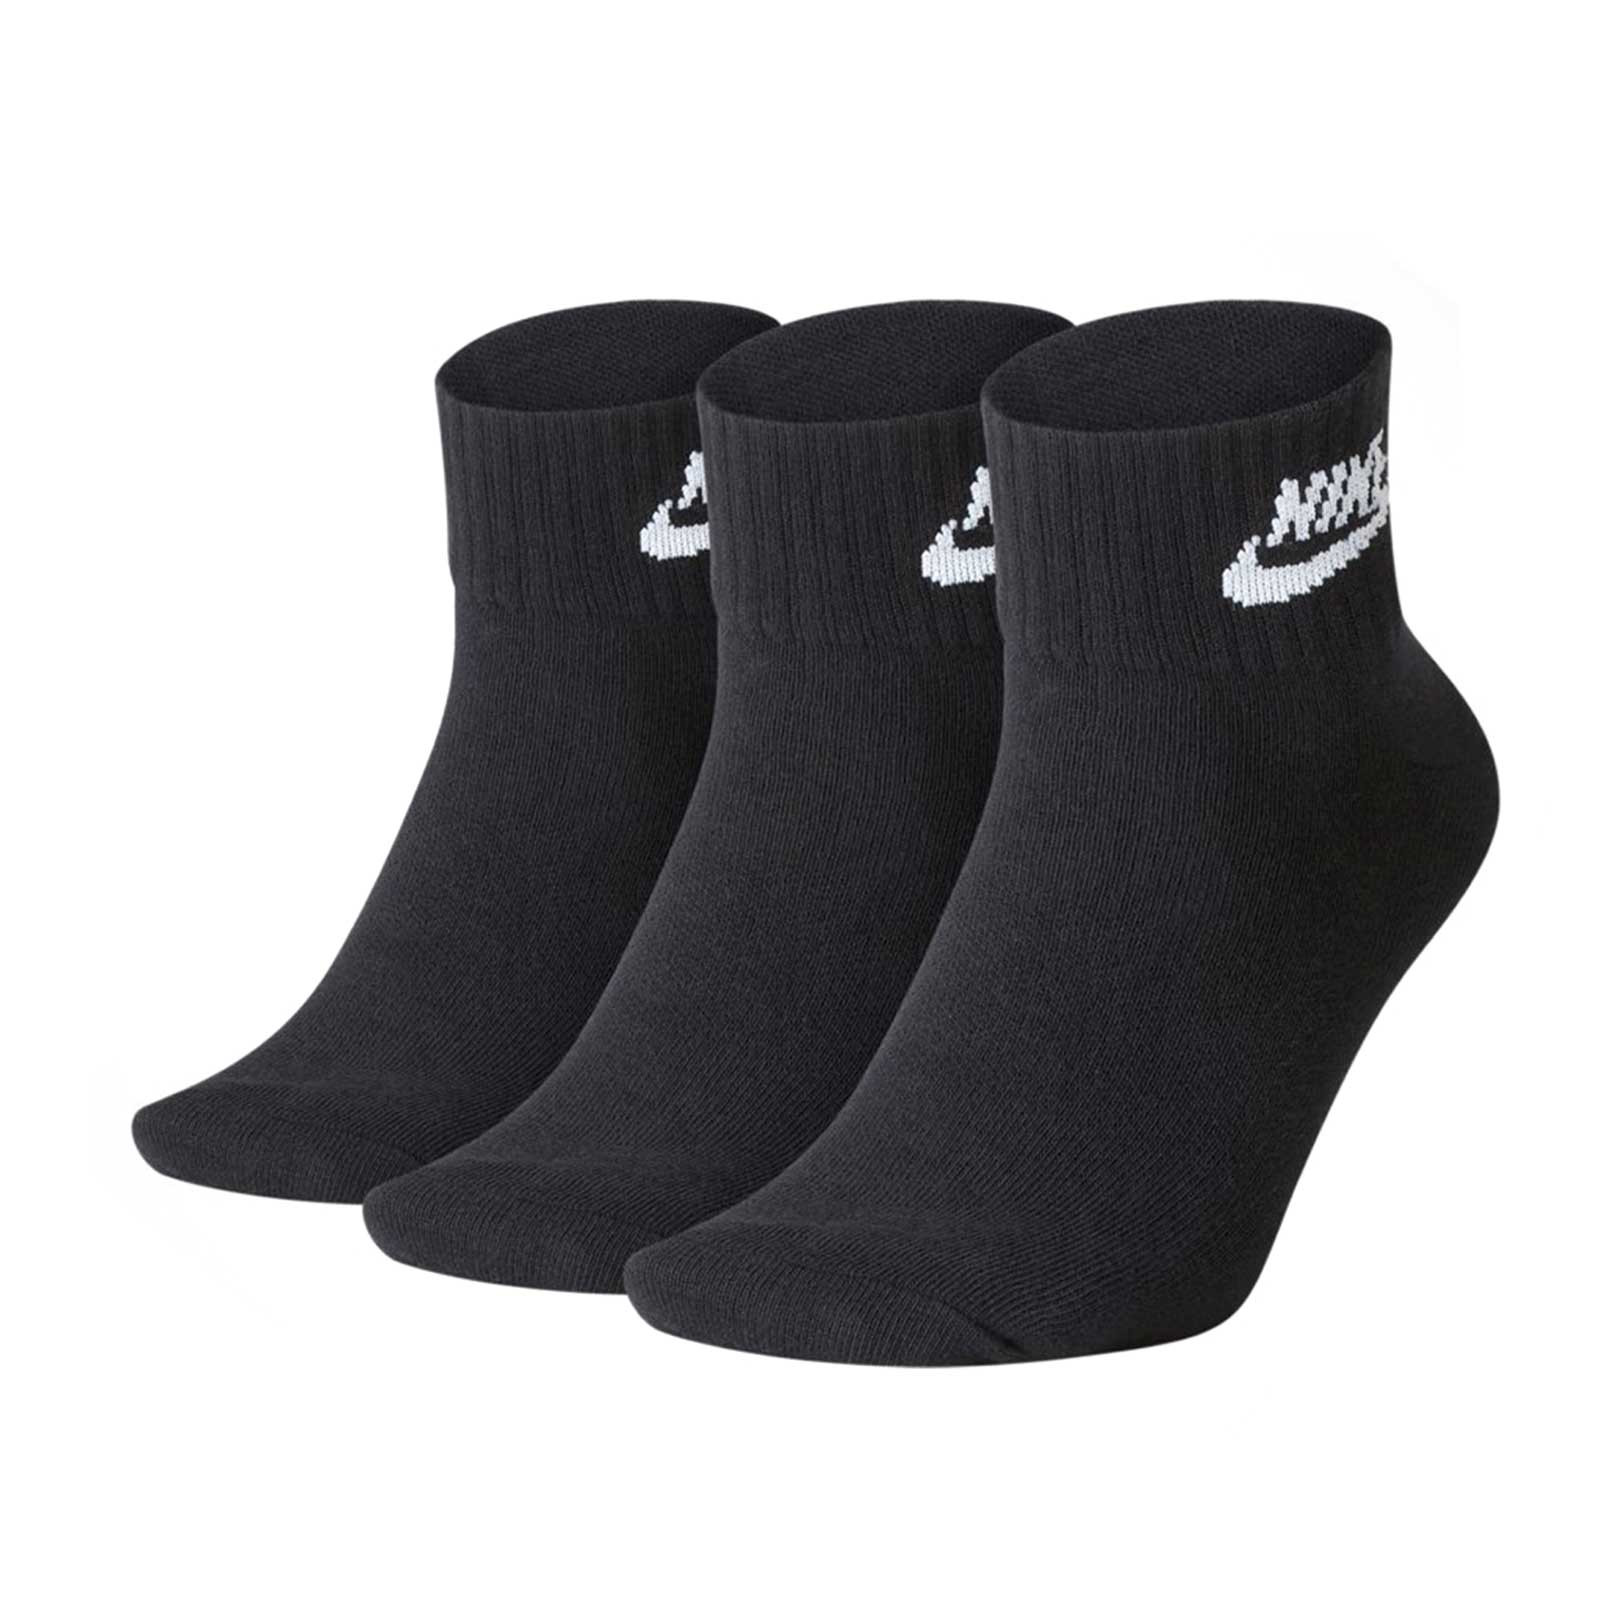 Pack 3 calcetines cortos algodón negro, Complementos y accesorios de mujer